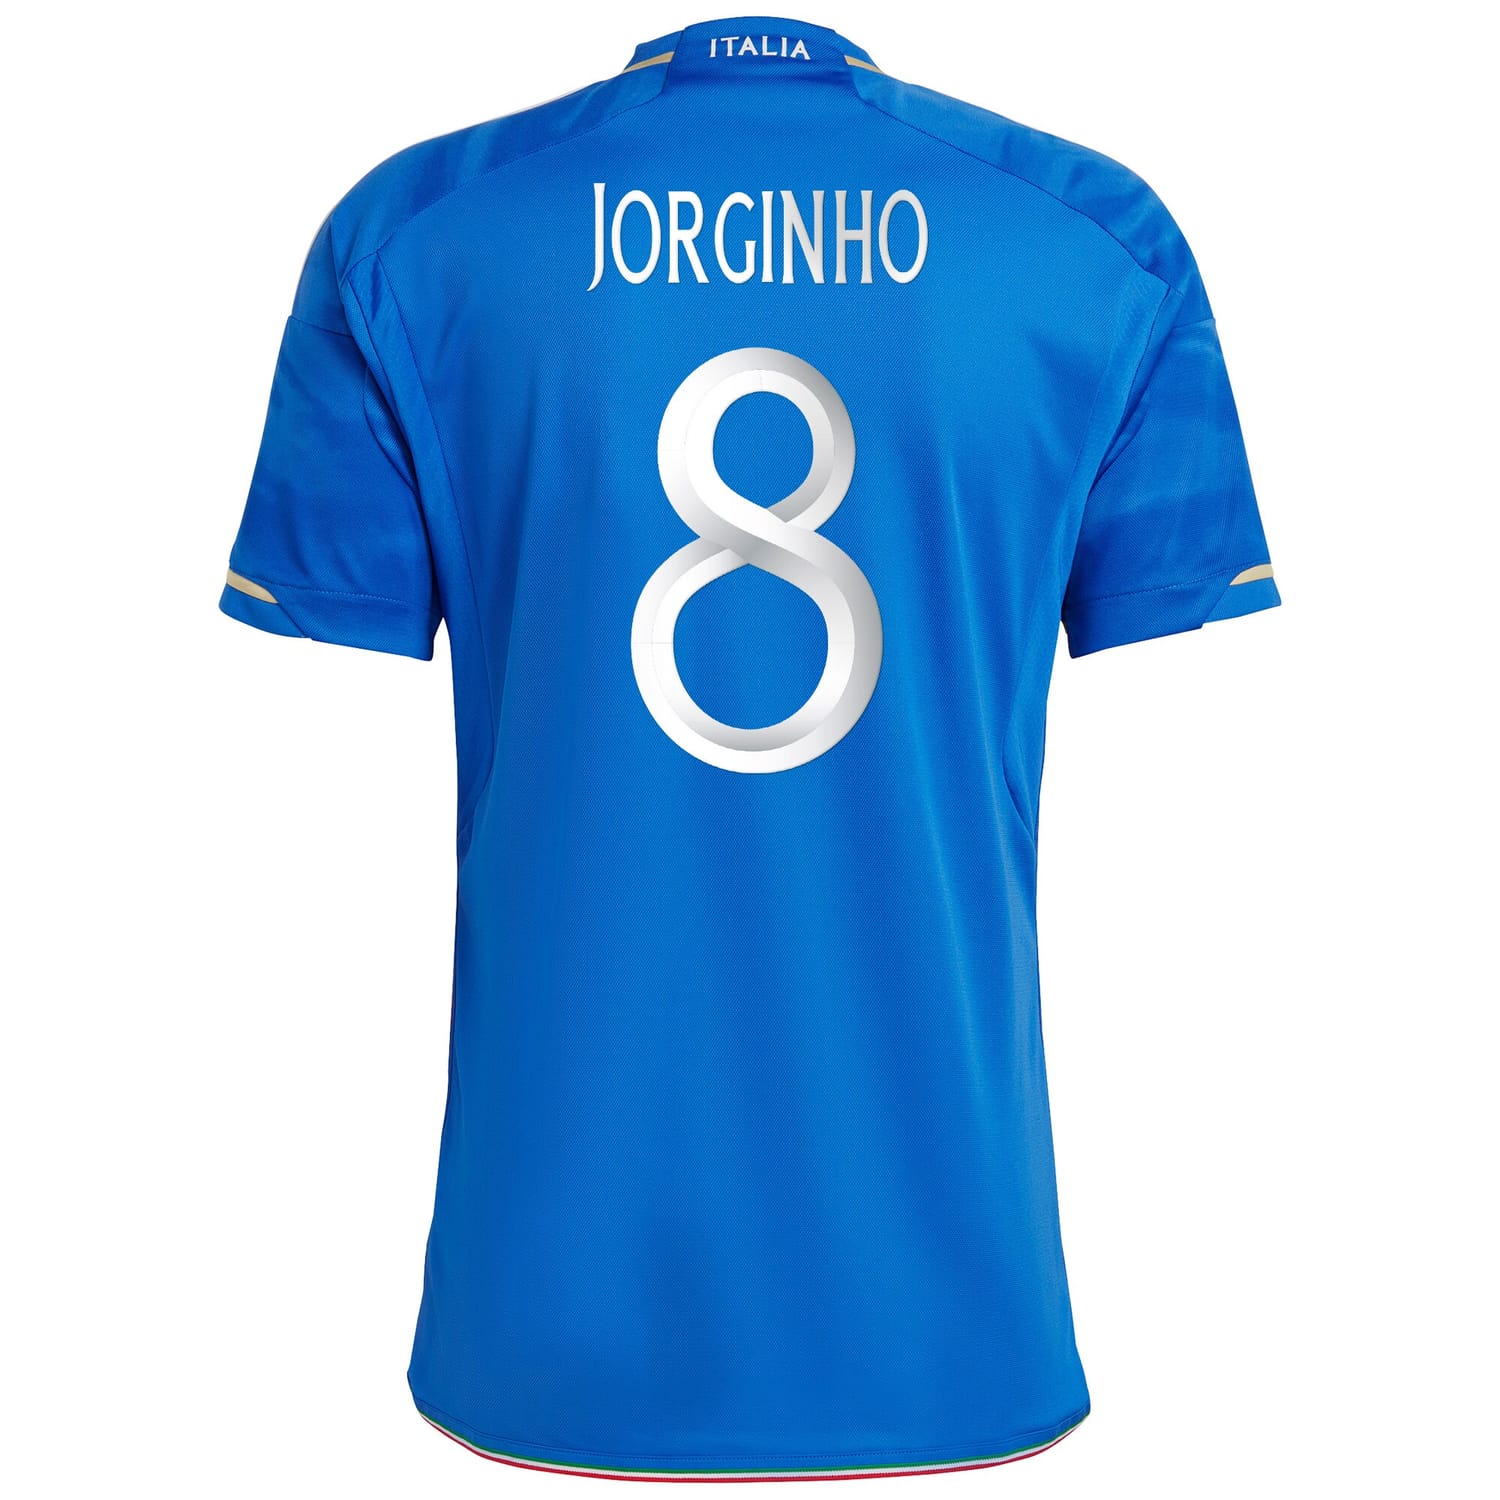 Italy National Team Home Jersey Shirt Blue 2023 player Jorginho printing for Men